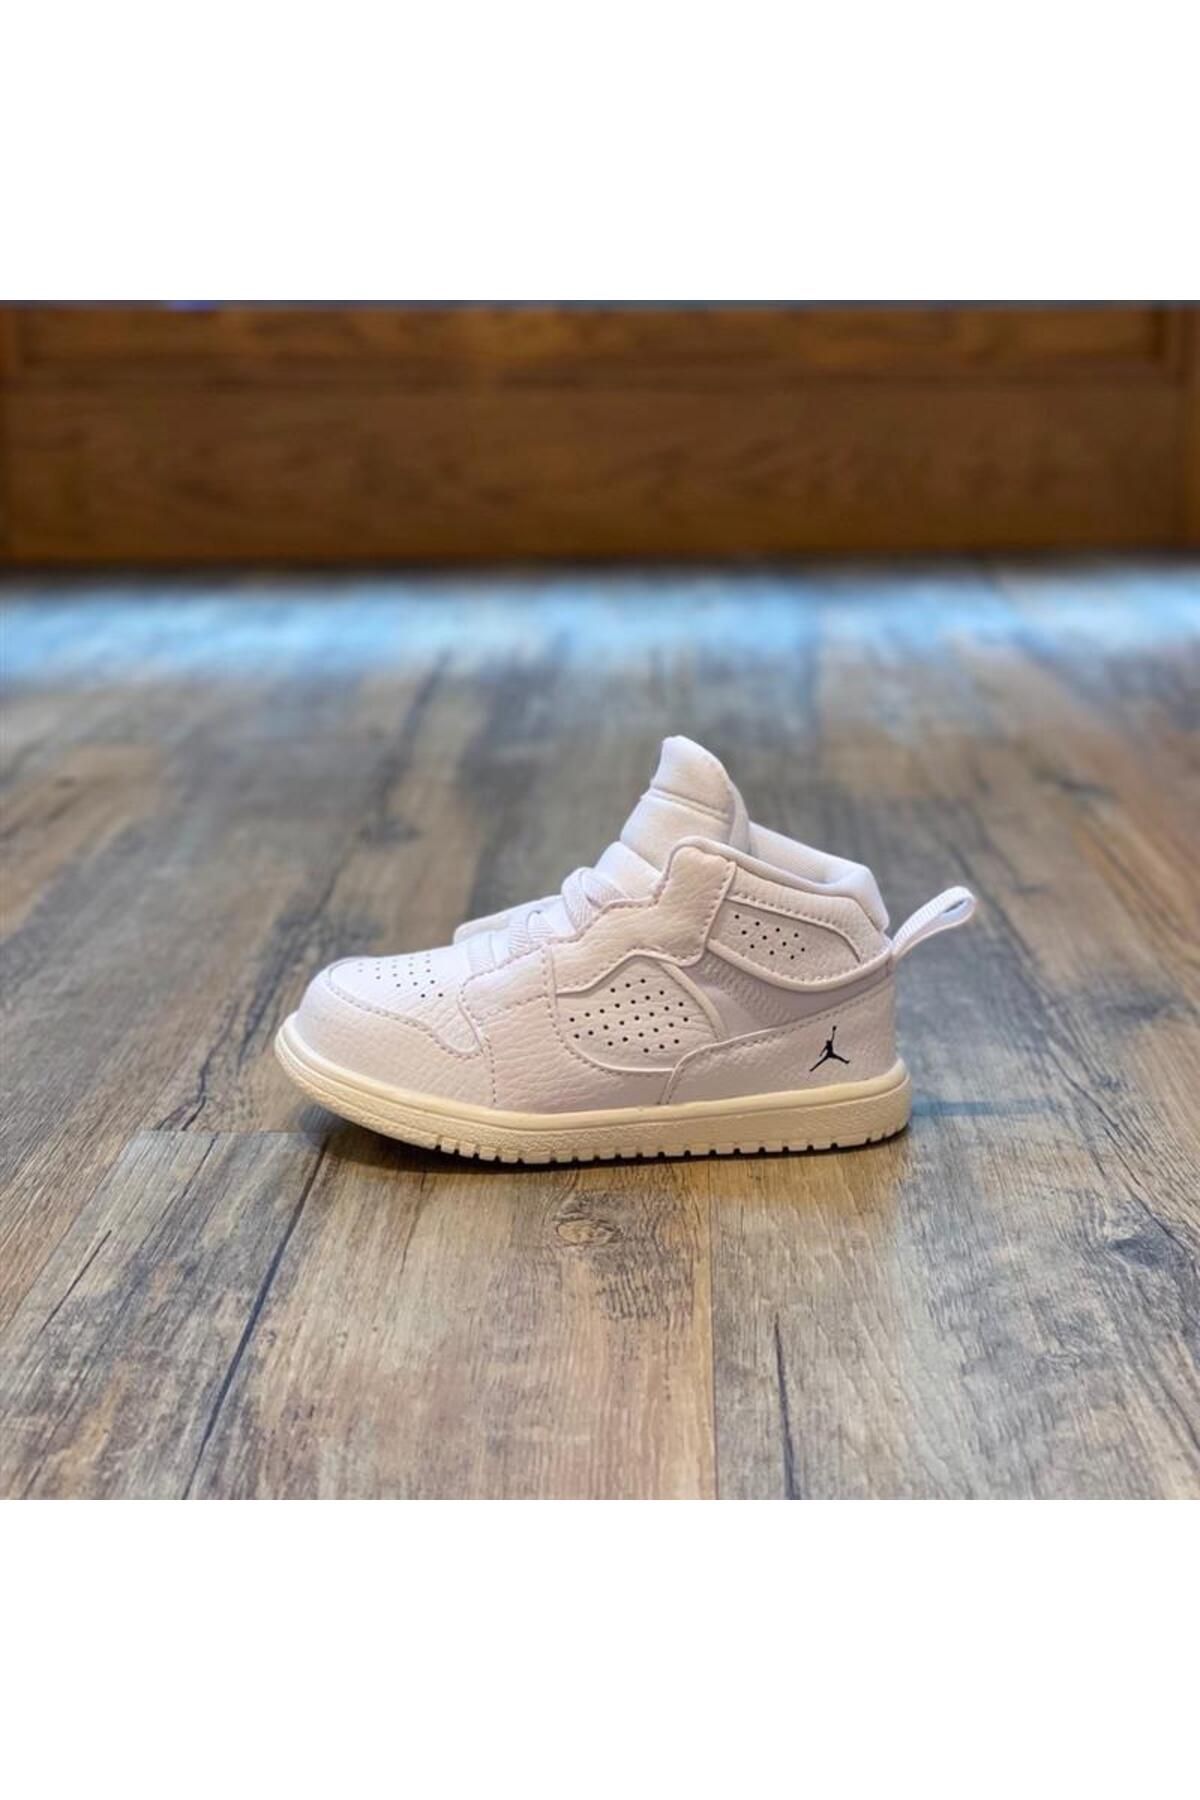 Nike NİKE Jordan Access Tdv Çocuk Ayakkabı Özel Seri Kalıp 1 Numara Dardır